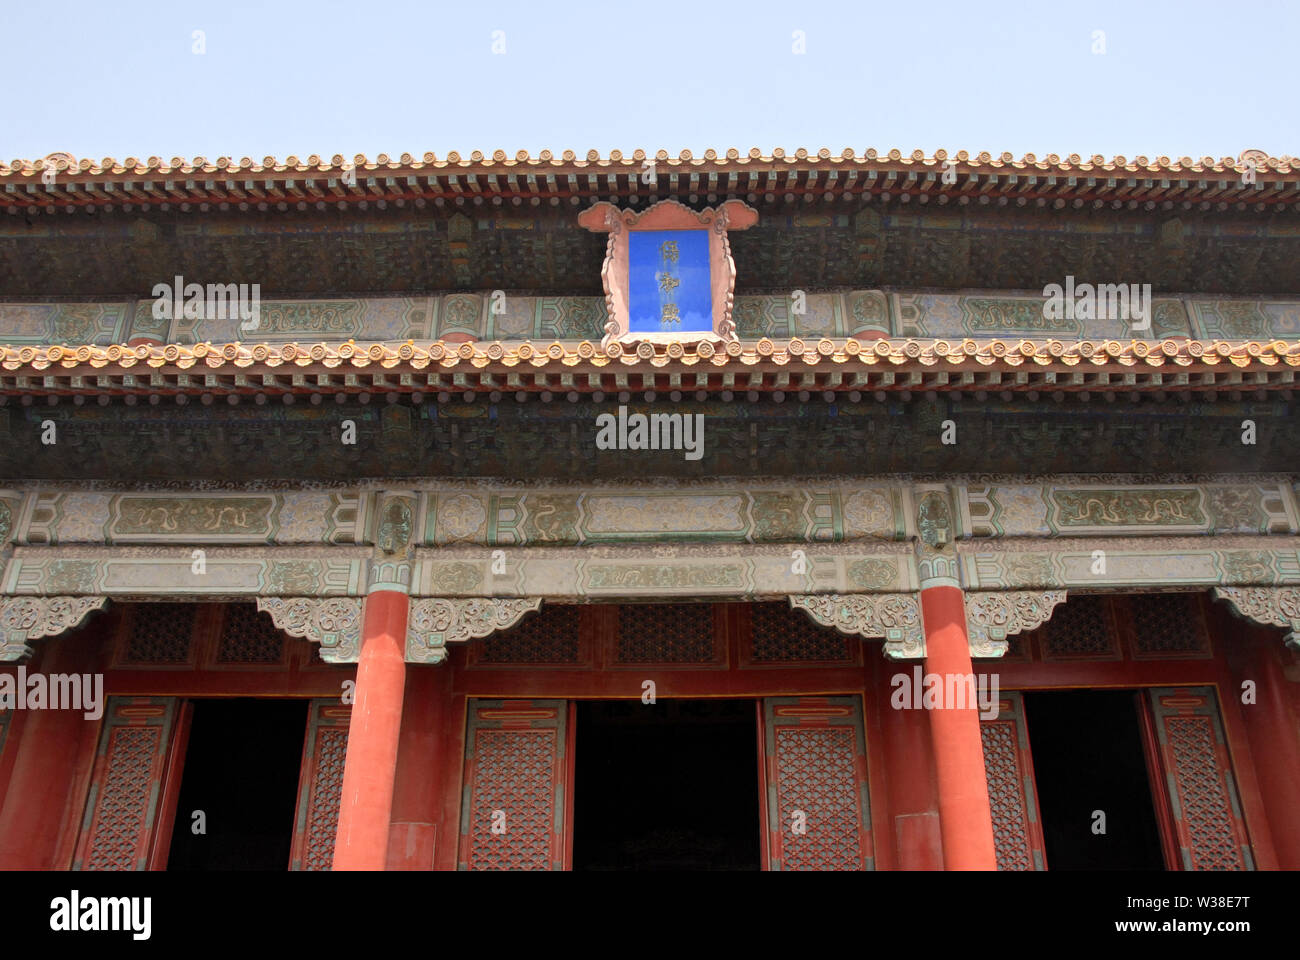 La città proibita a Pechino, Cina. Questa è la sala di preservare l'armonia. La Città Proibita è tradizionale architettura cinese. UNESCO, Pechino. Foto Stock